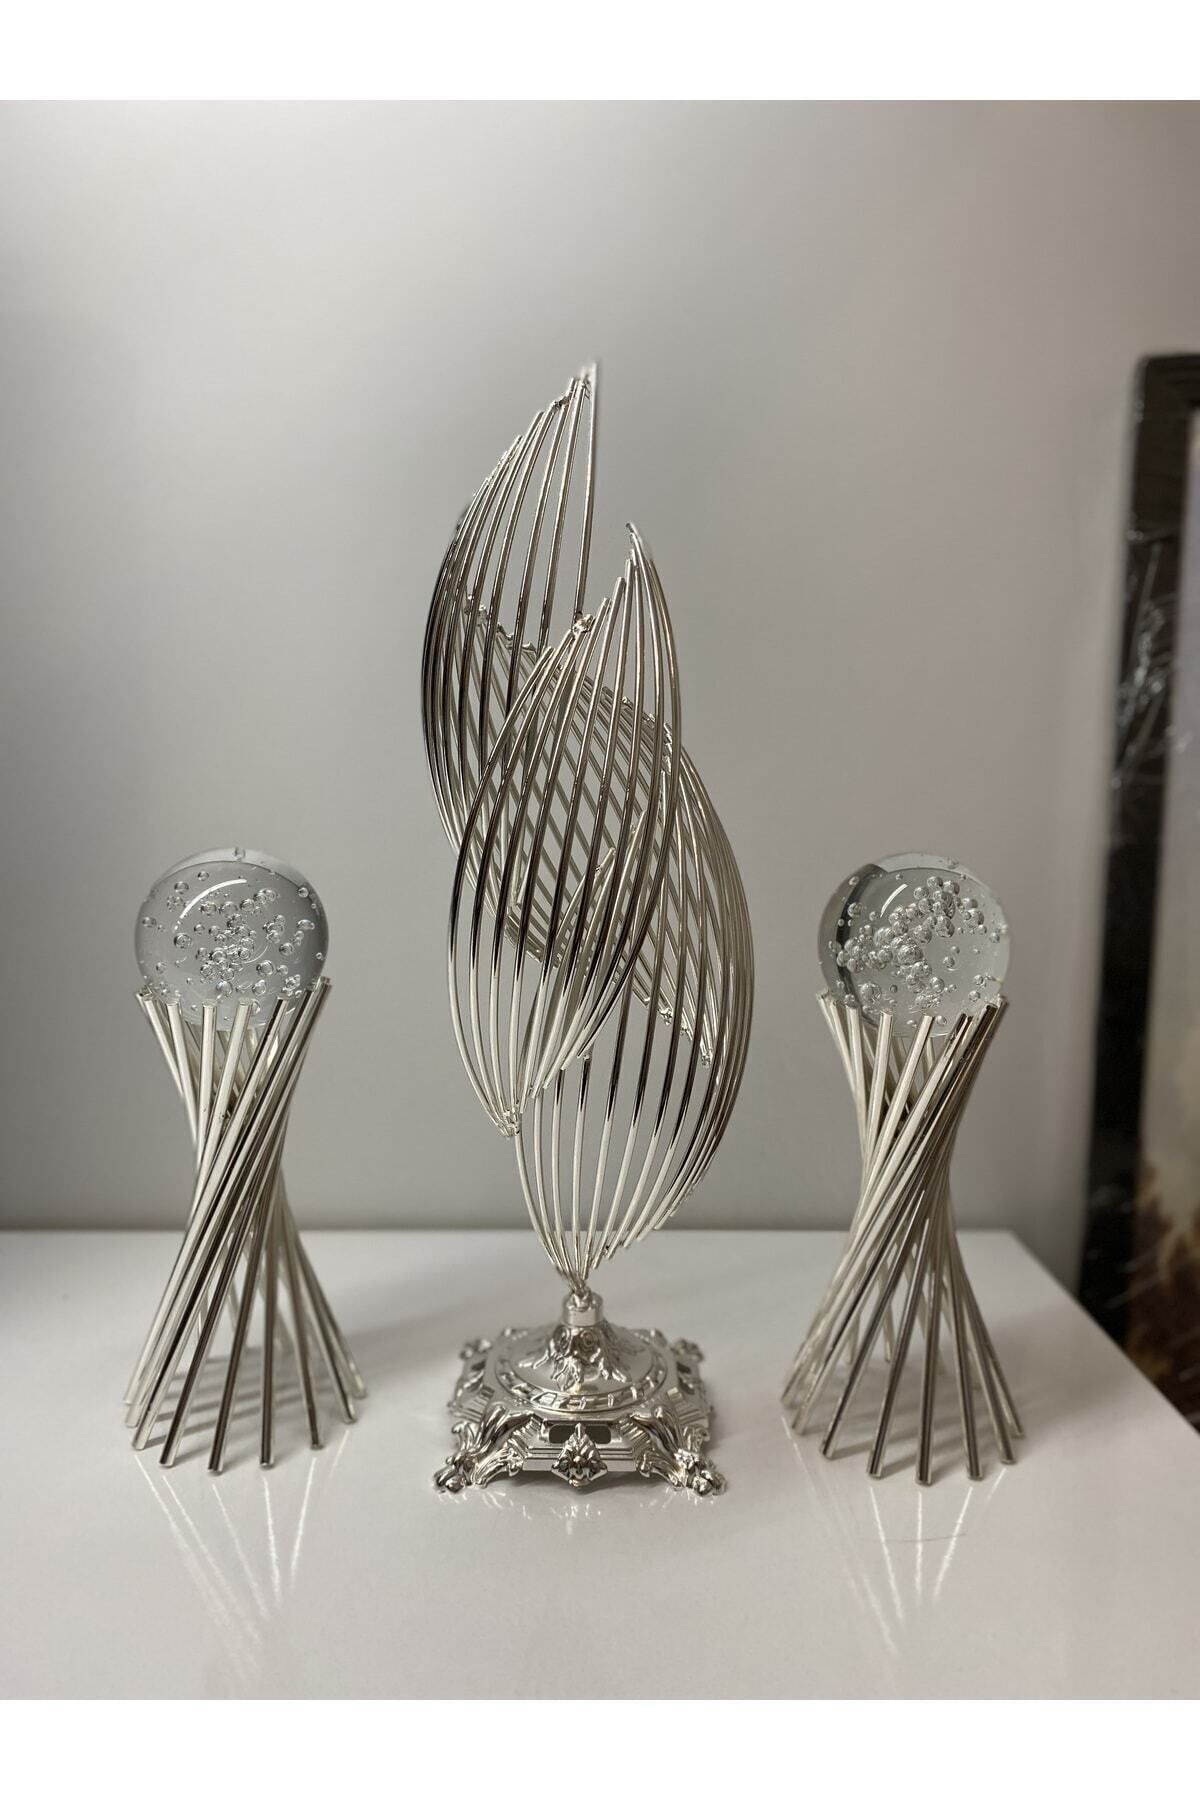 asellus 3lü Set : Gümüş Renk Metal Tasarımlı 2 Burgulu Ve 1 Helezon Dekorasyon Objesi, Hediyelik Lüks Ev